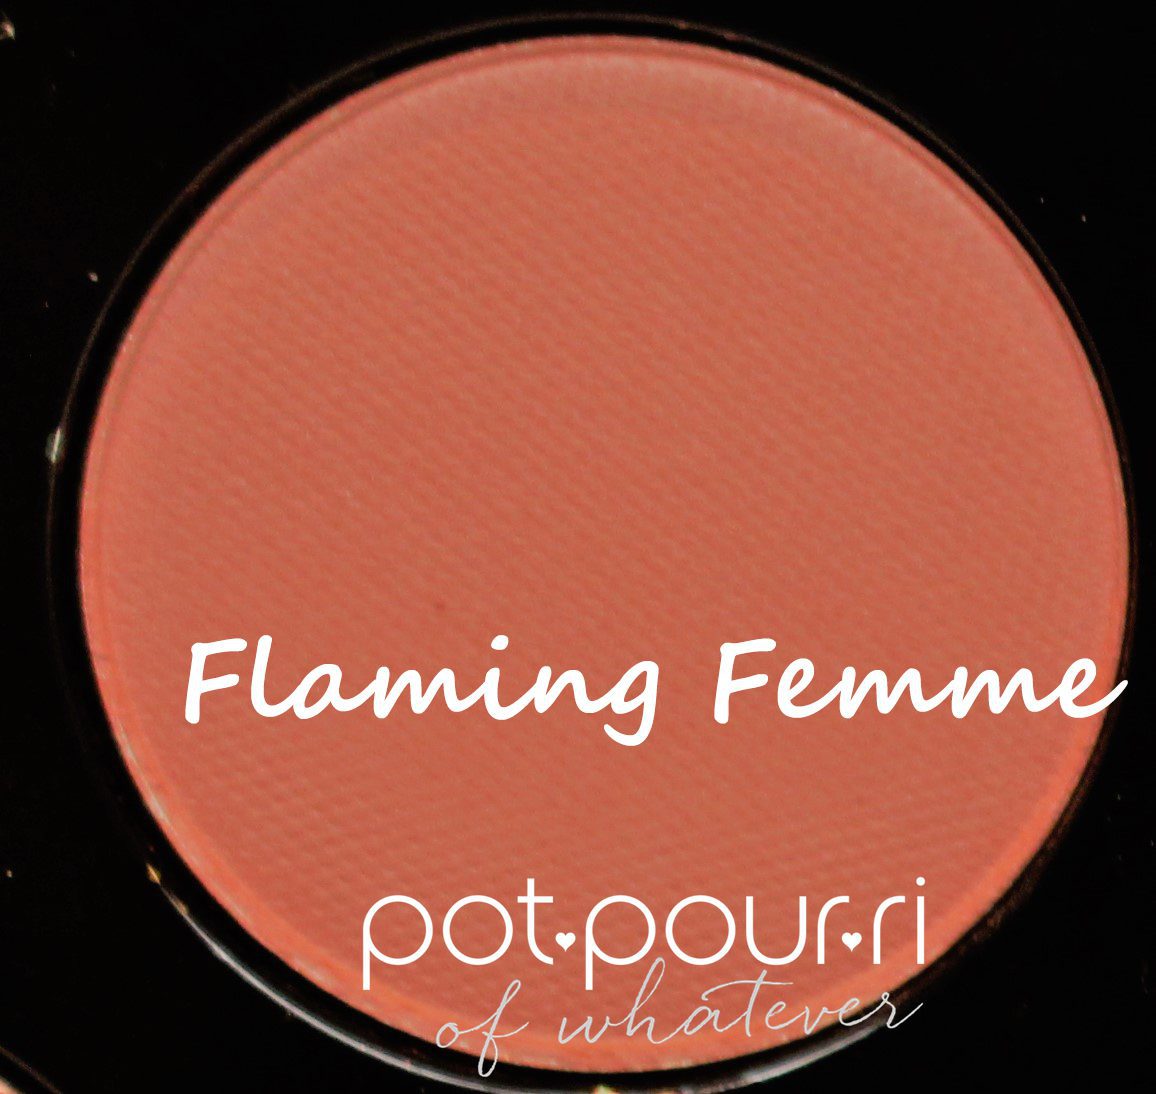 Mac-flaming-femme-shadow-mischief-Minx-eyeshadow-palette